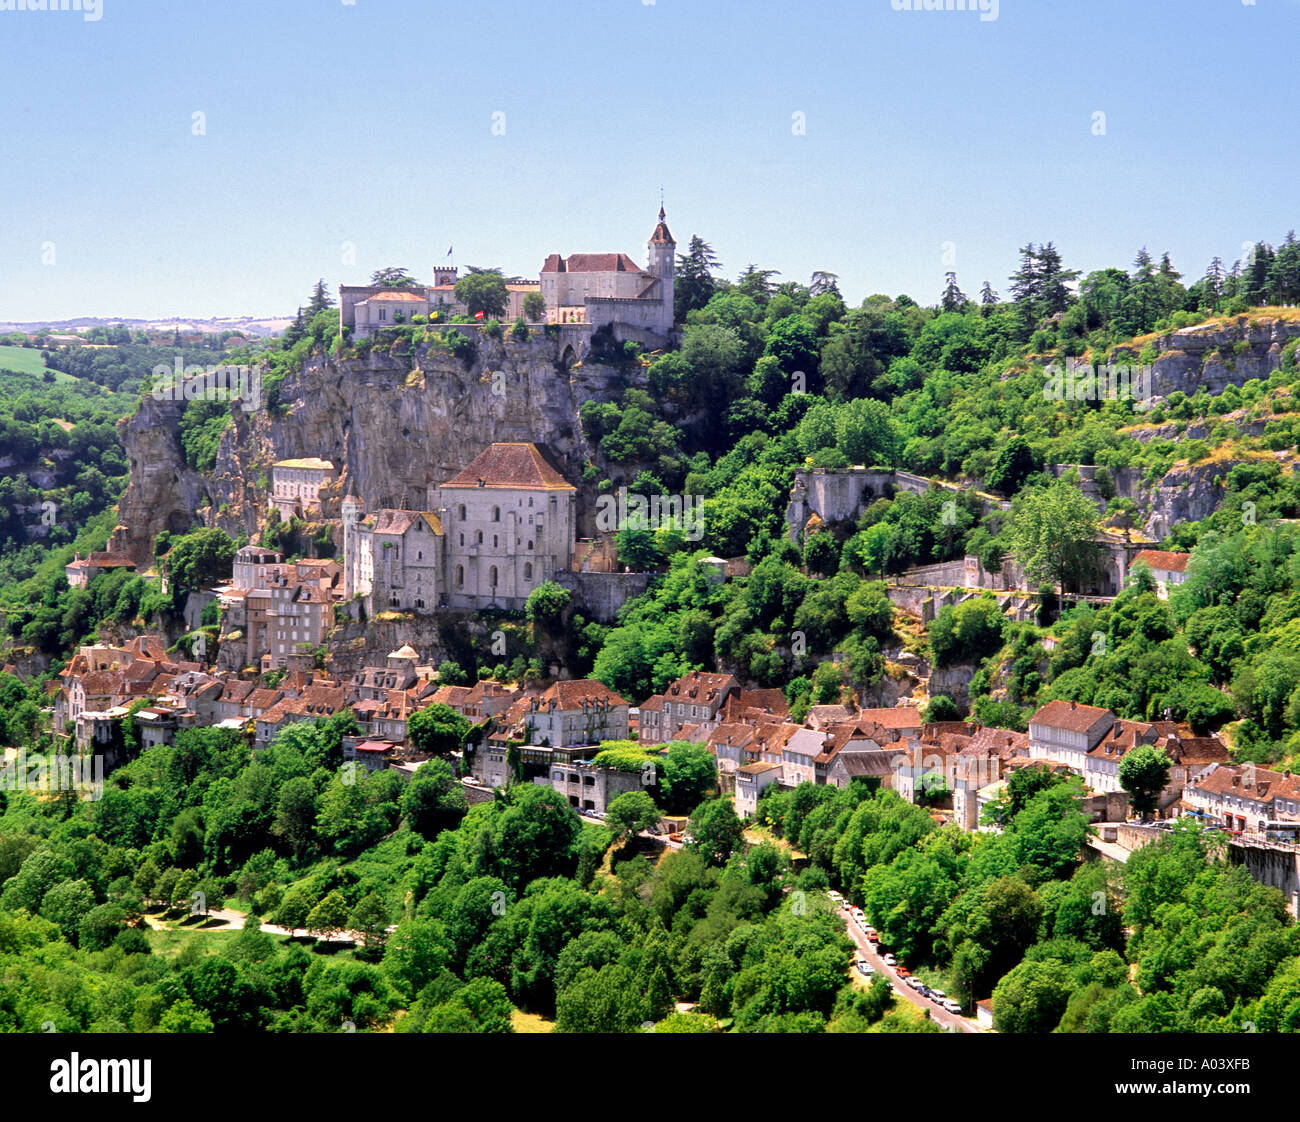 Rocamadour village en Dordogne, Francia. Esta imagen estaba anteriormente disponible como una imagen650AA. Foto de stock